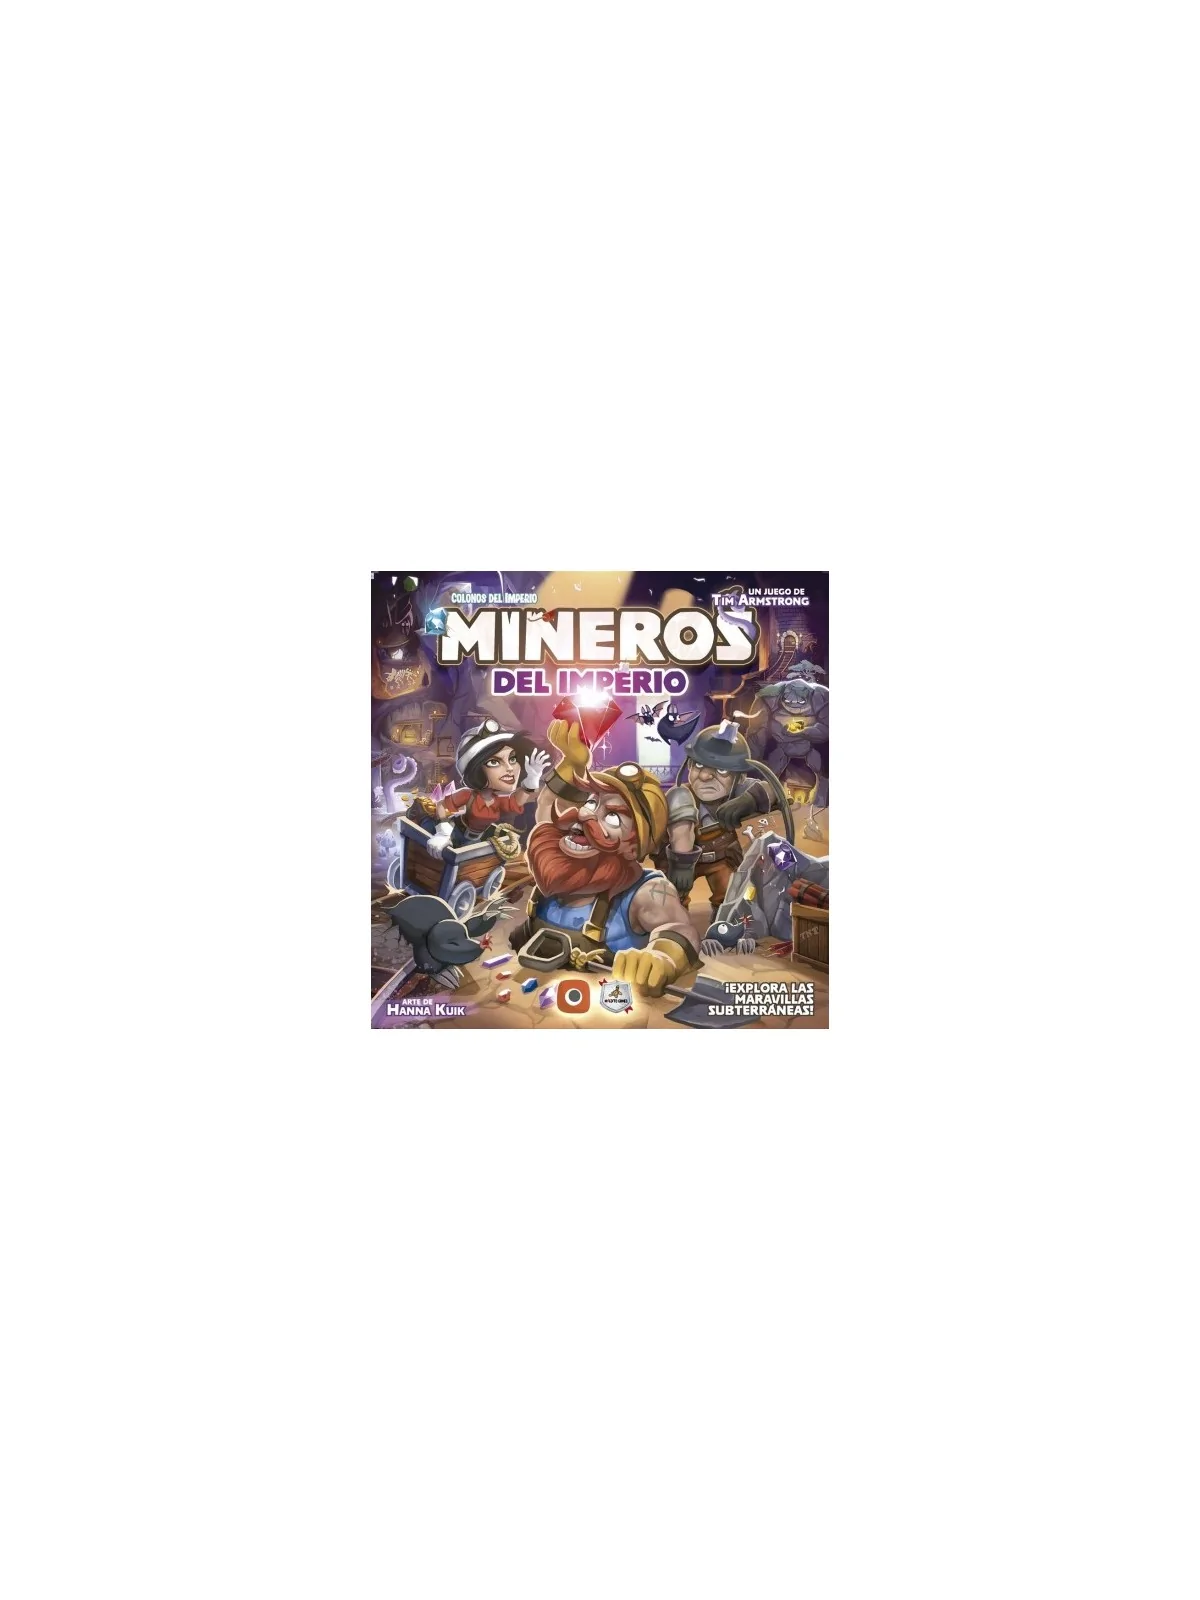 Comprar Mineros del Imperio barato al mejor precio 31,50 € de Maldito 